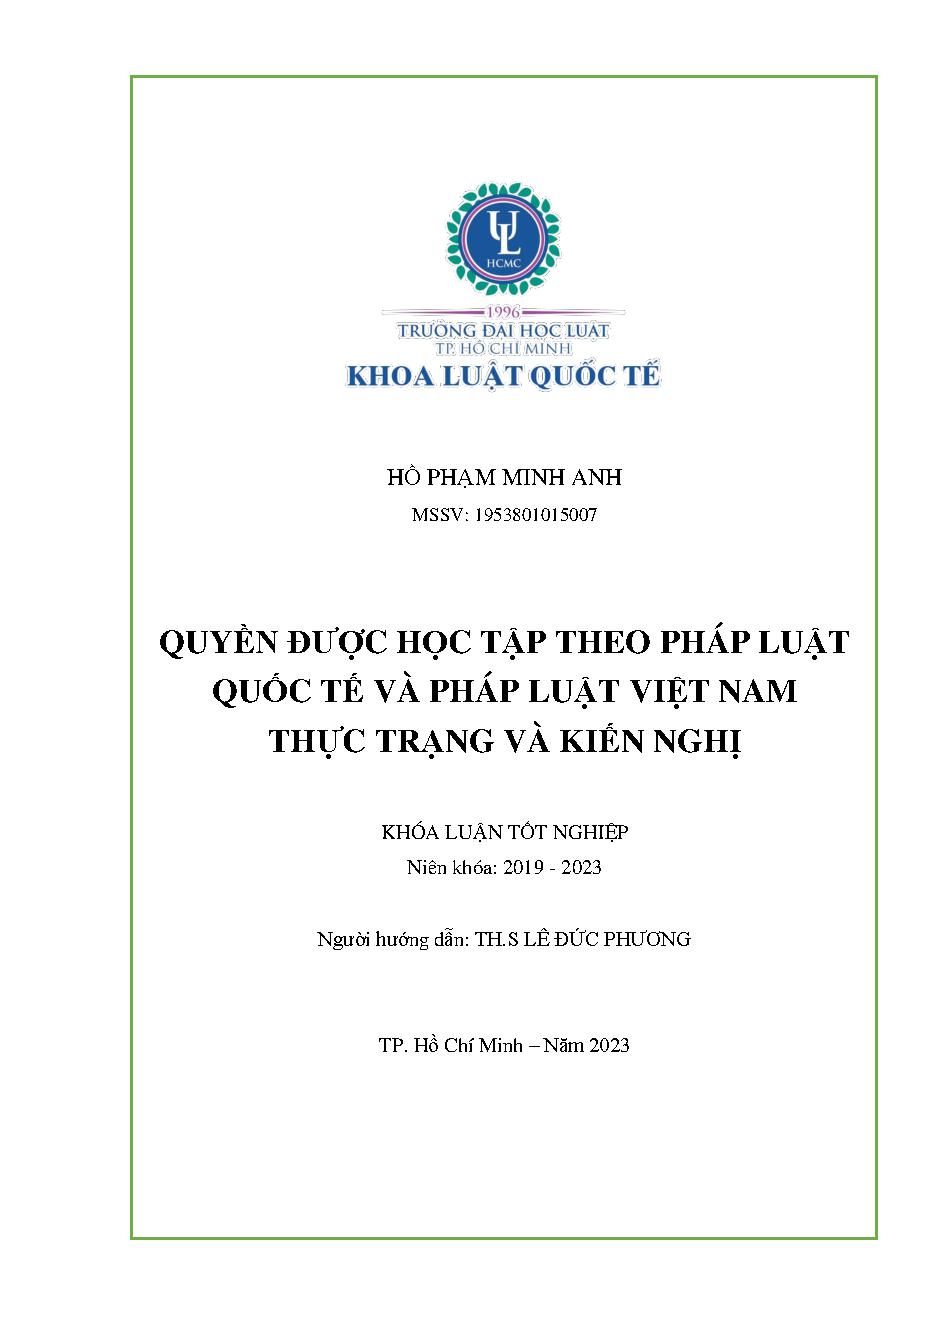 Quyền được học tập theo pháp luật quốc tế và pháp luật Việt Nam - Thực trạng và kiến nghị